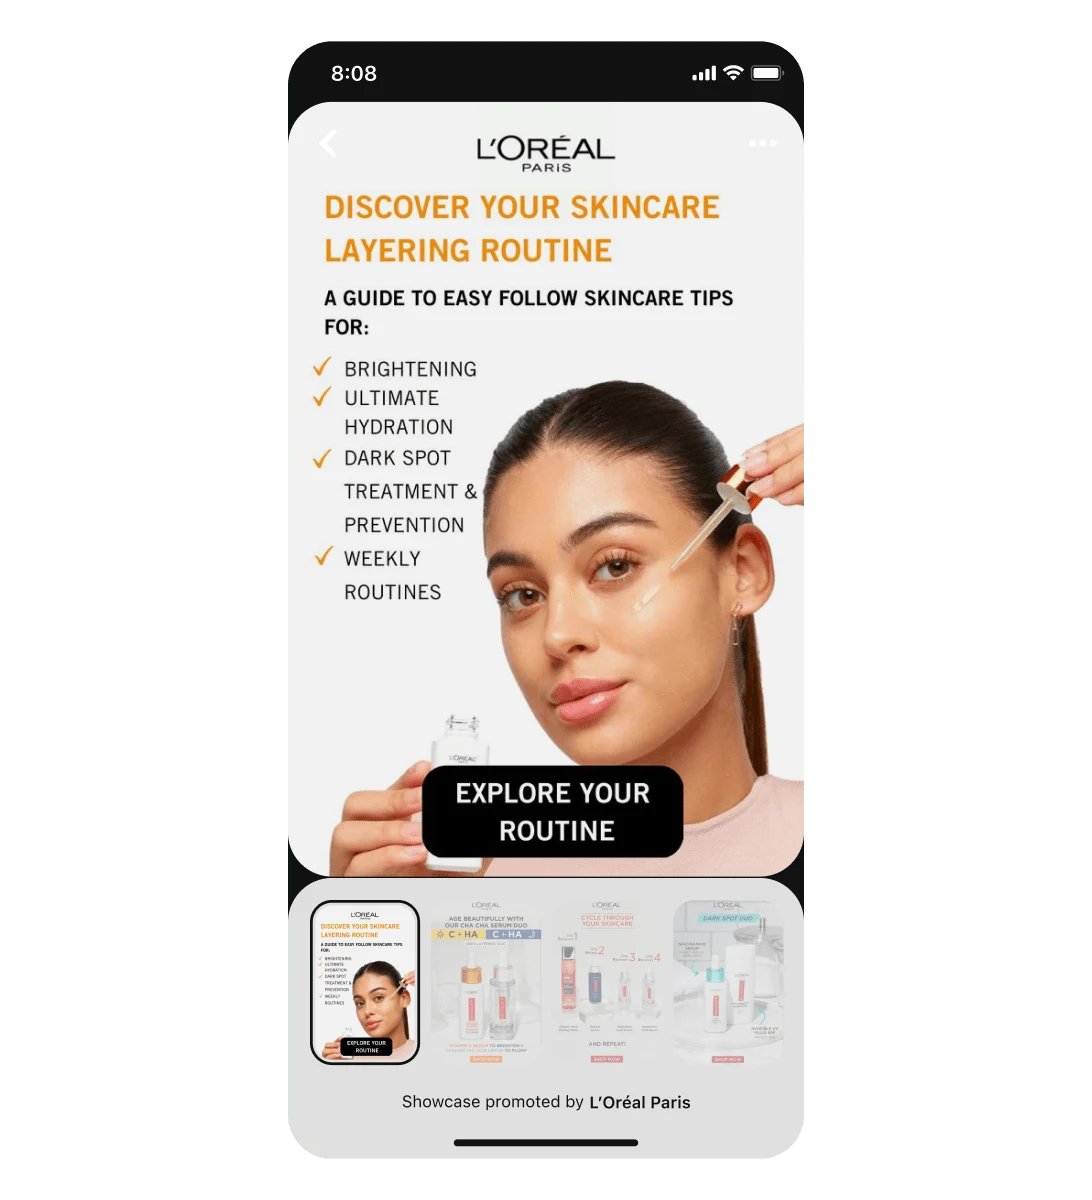 라틴계 여성이 페이스 세럼을 사용하고 있는 L'Oreal 쇼케이스 광고를 표시한 모바일 화면 뷰입니다.이 제목 핀에 뒤이어 스와이프 형식의 카드 세 장이 나옵니다.